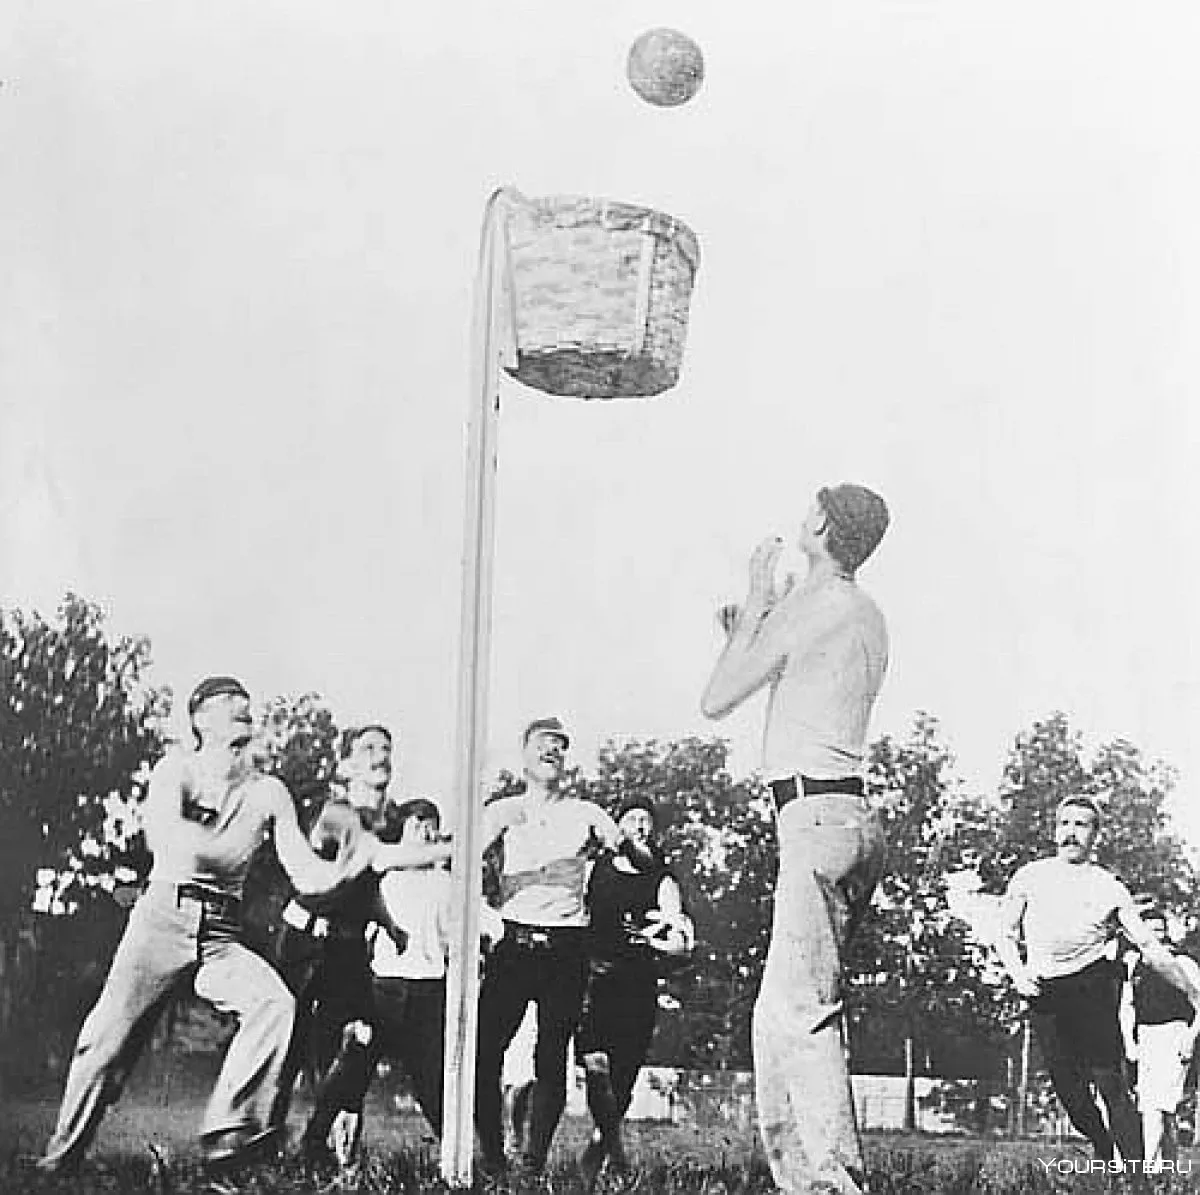 Early basketball with no backboard